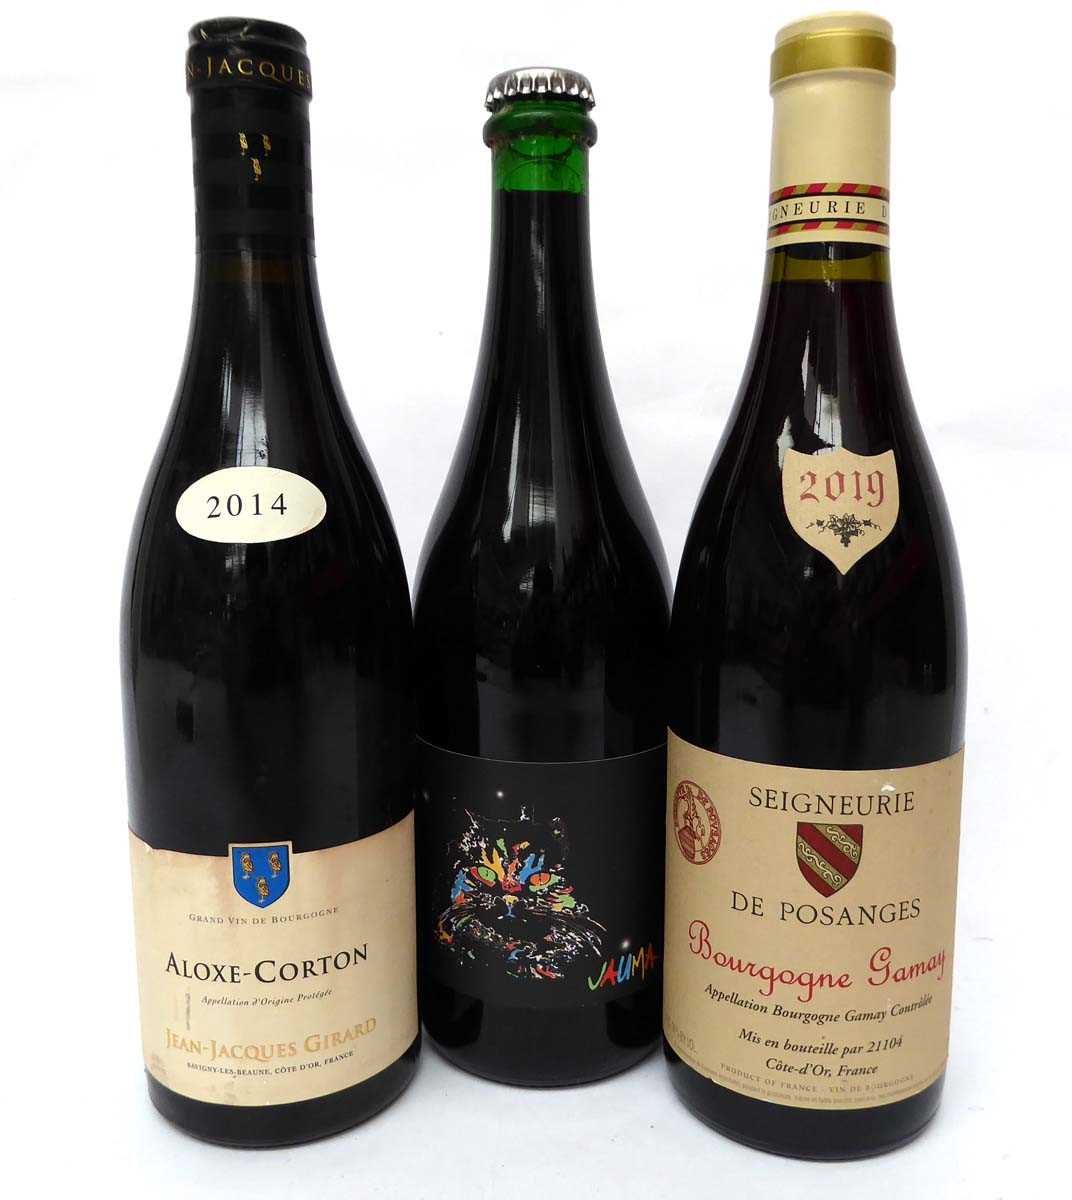 +VAT 5 bottles, 1x 2014 Domaine Jean-Jacques Girard Aloxe-Corton Cote de Beaune, 2x Seigneurie de